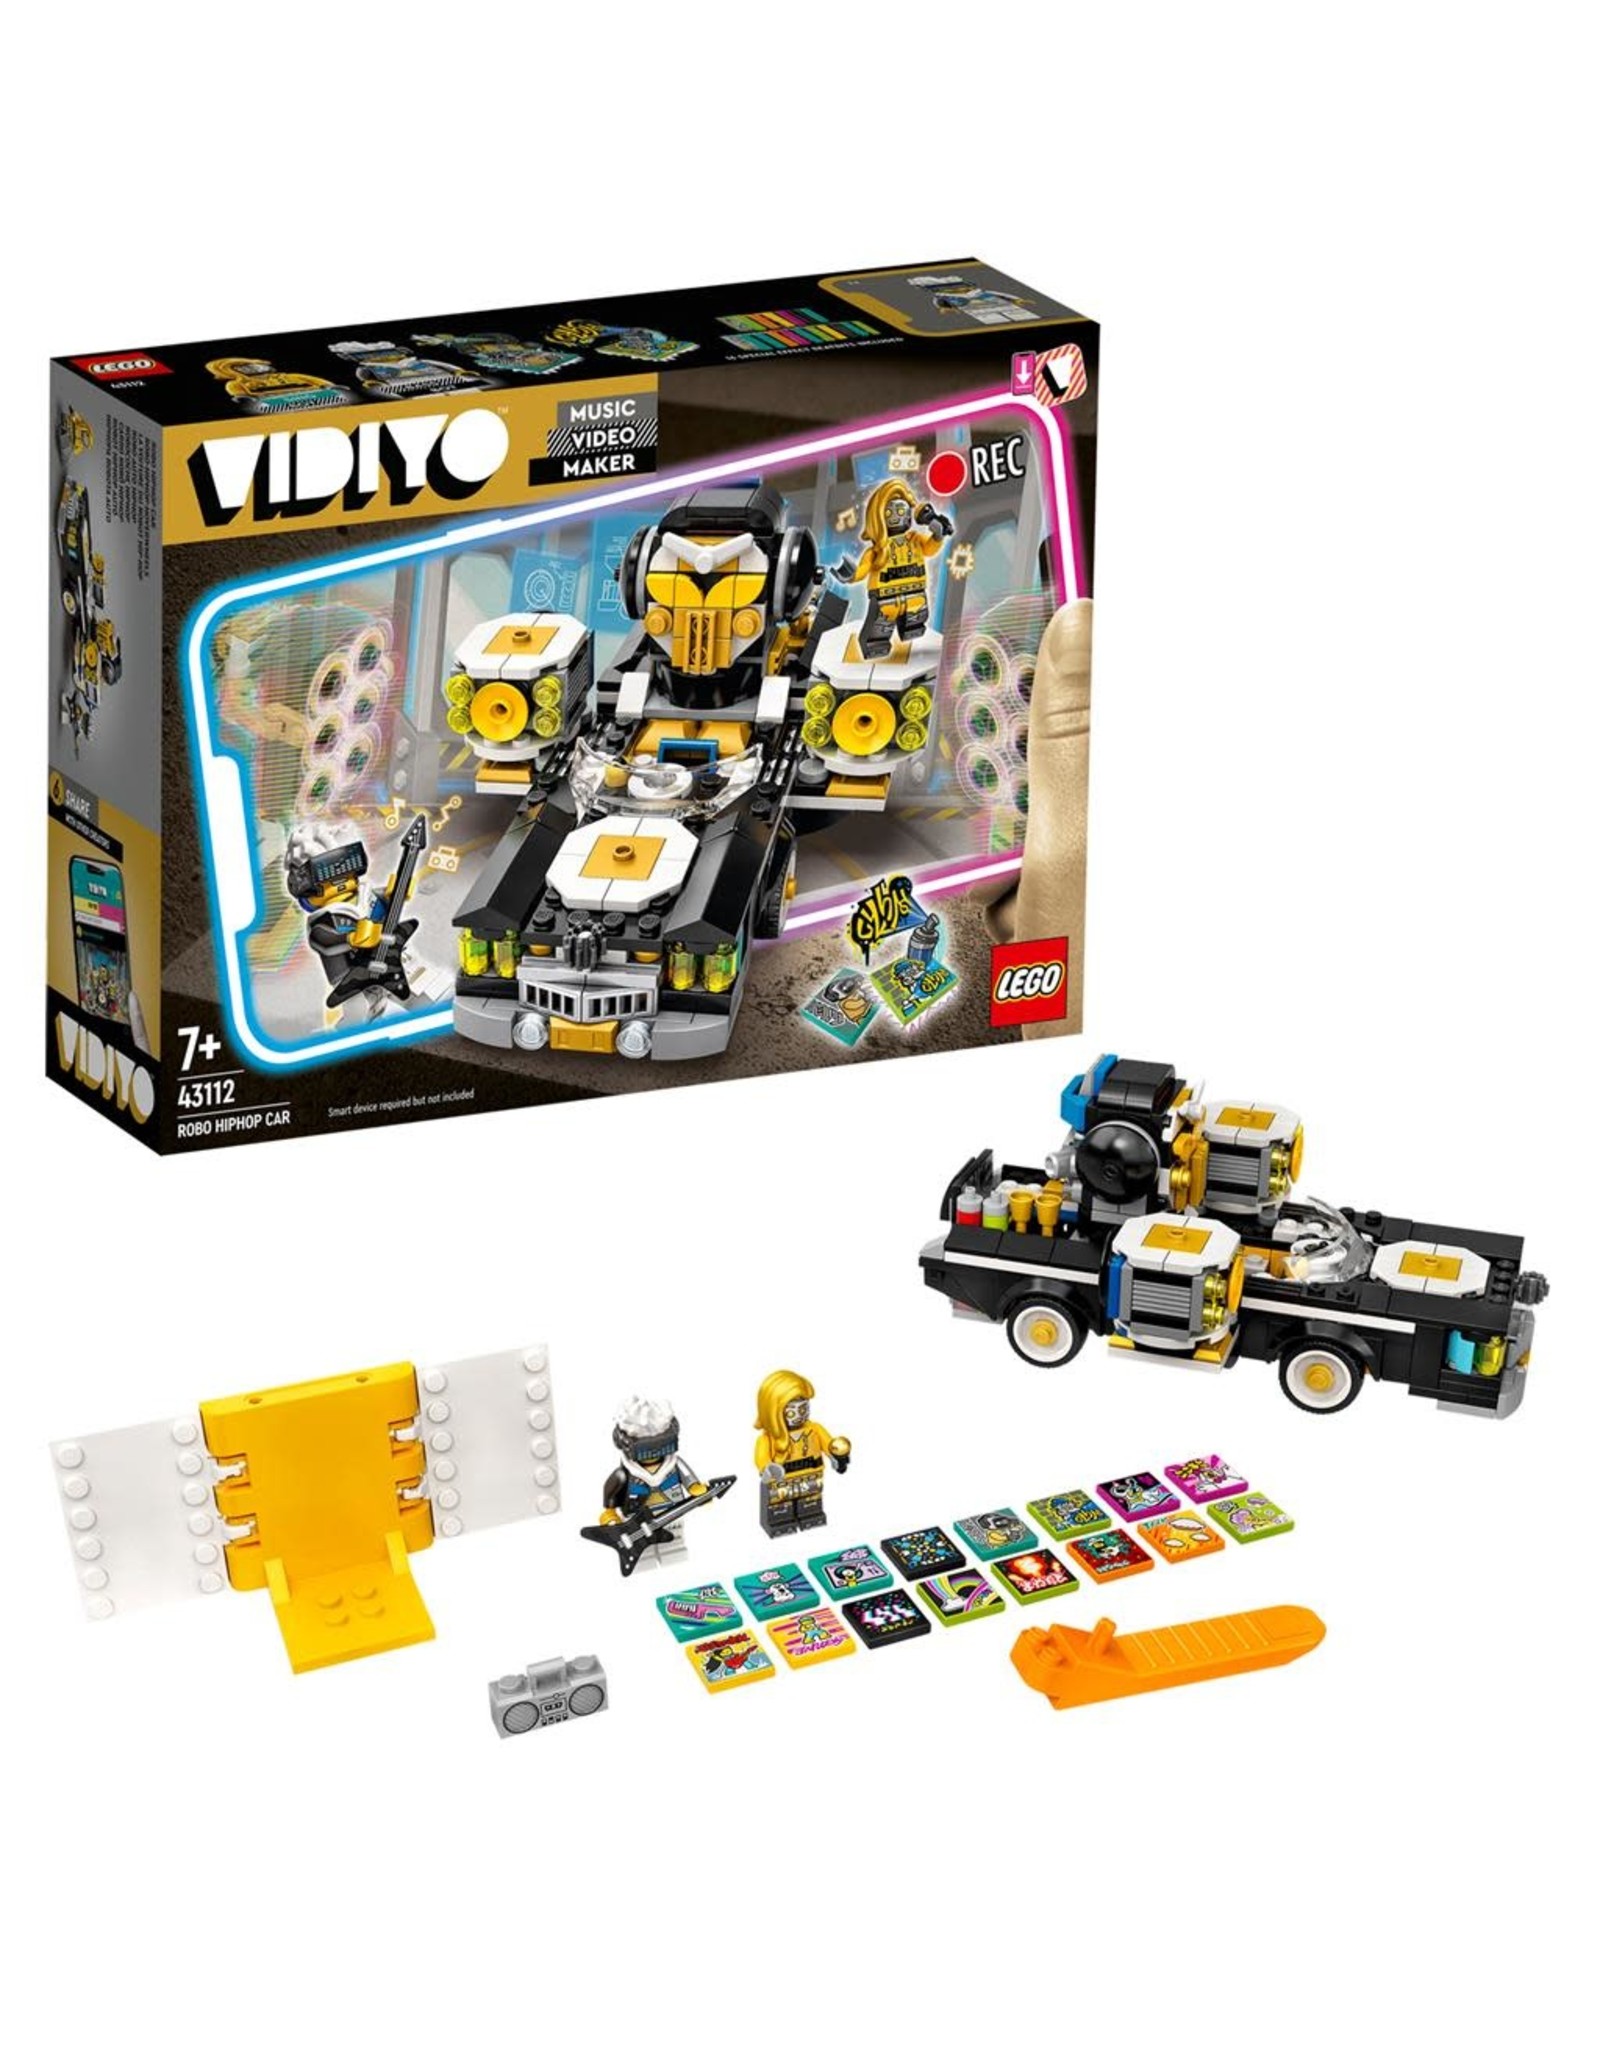 LEGO Lego Vidiyo 43112 Robo HipHop Car